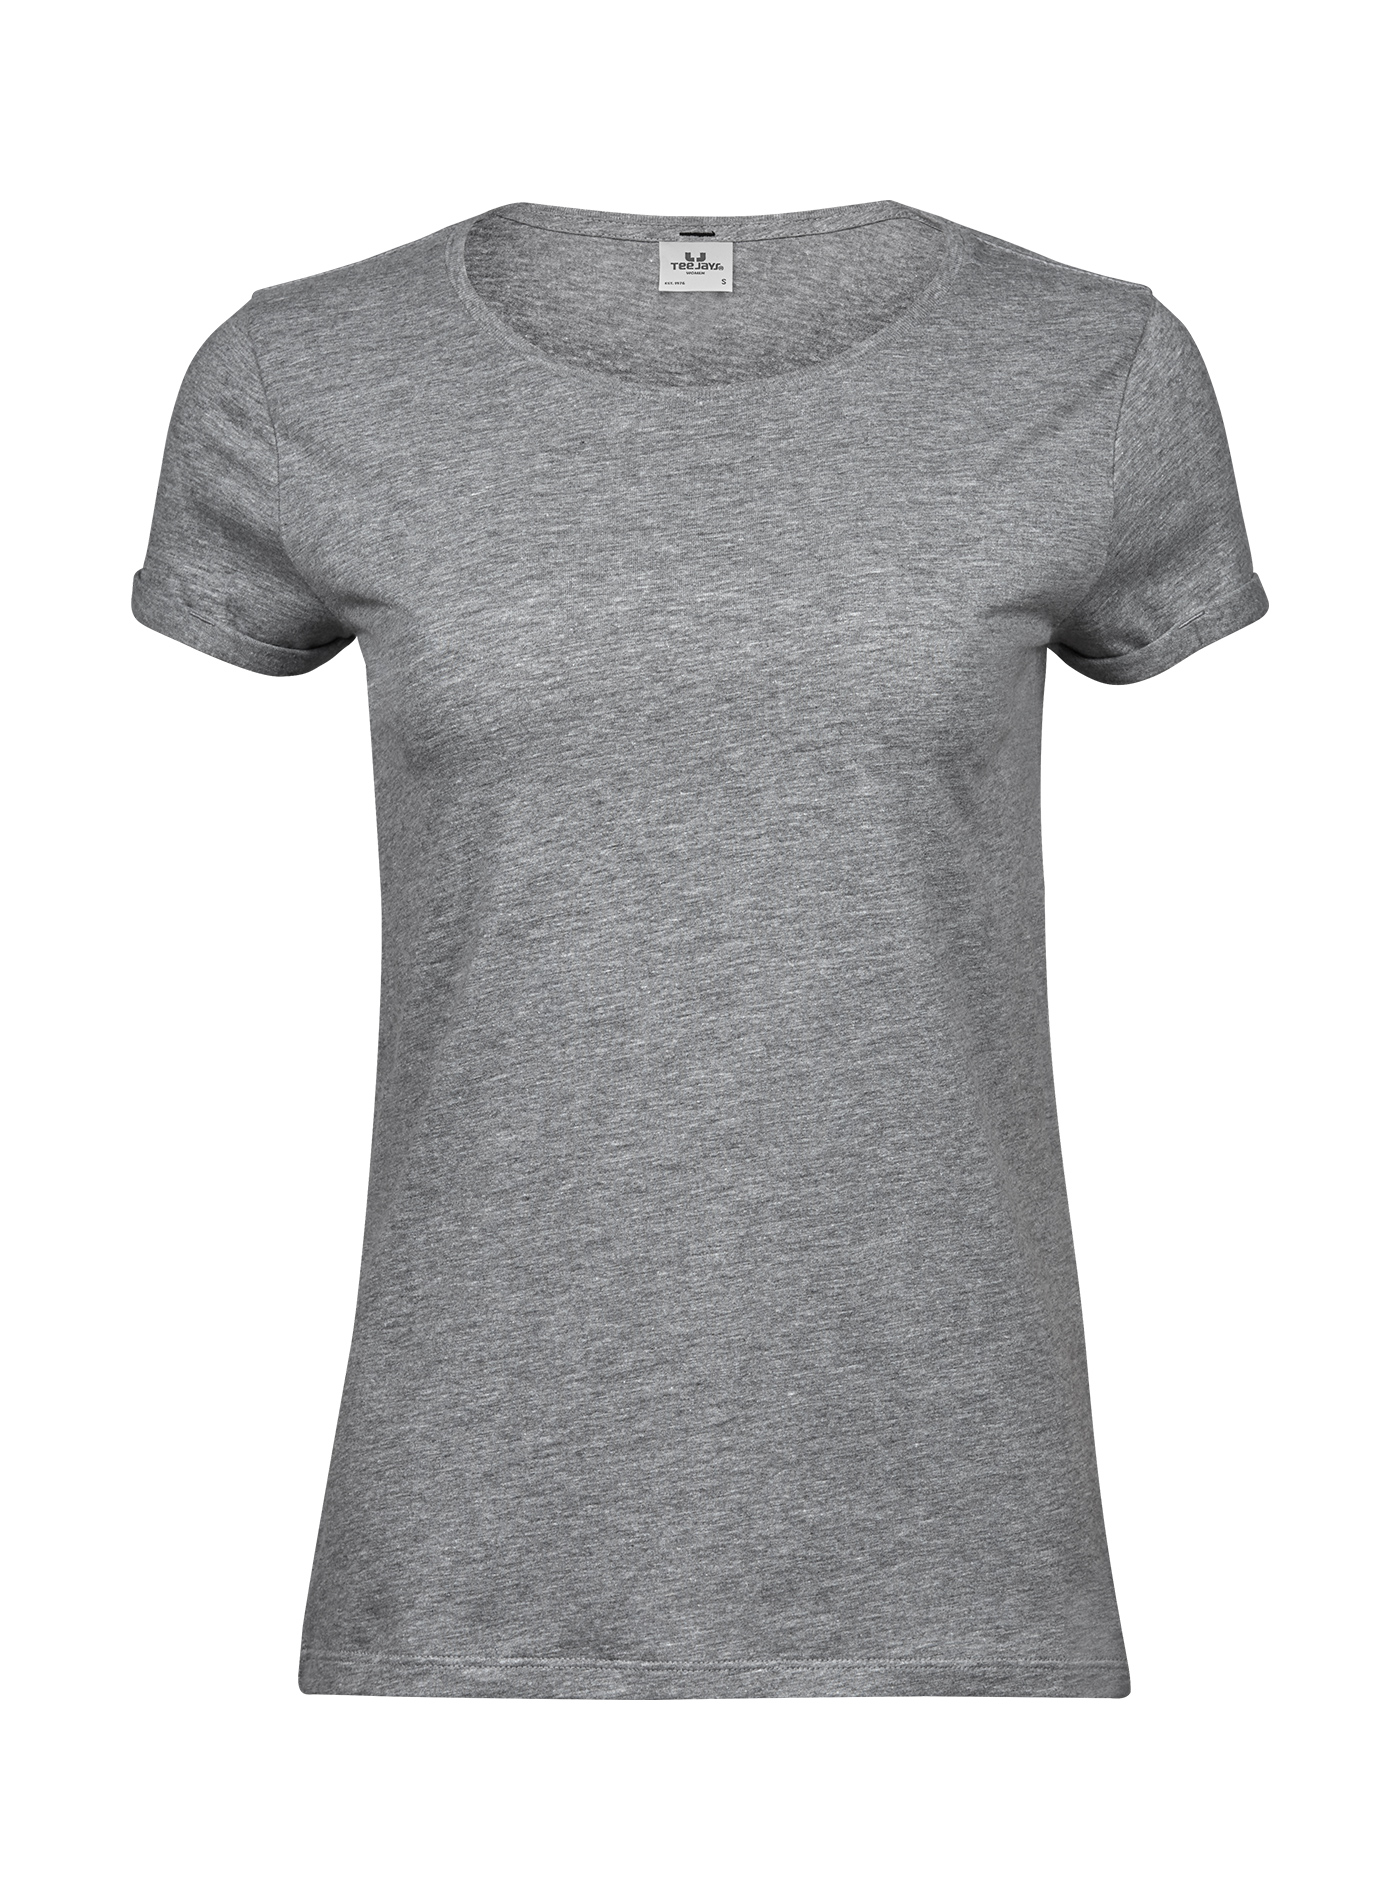 Dámské tričko Roll-up Tee Jays - Světle šedý melír XL